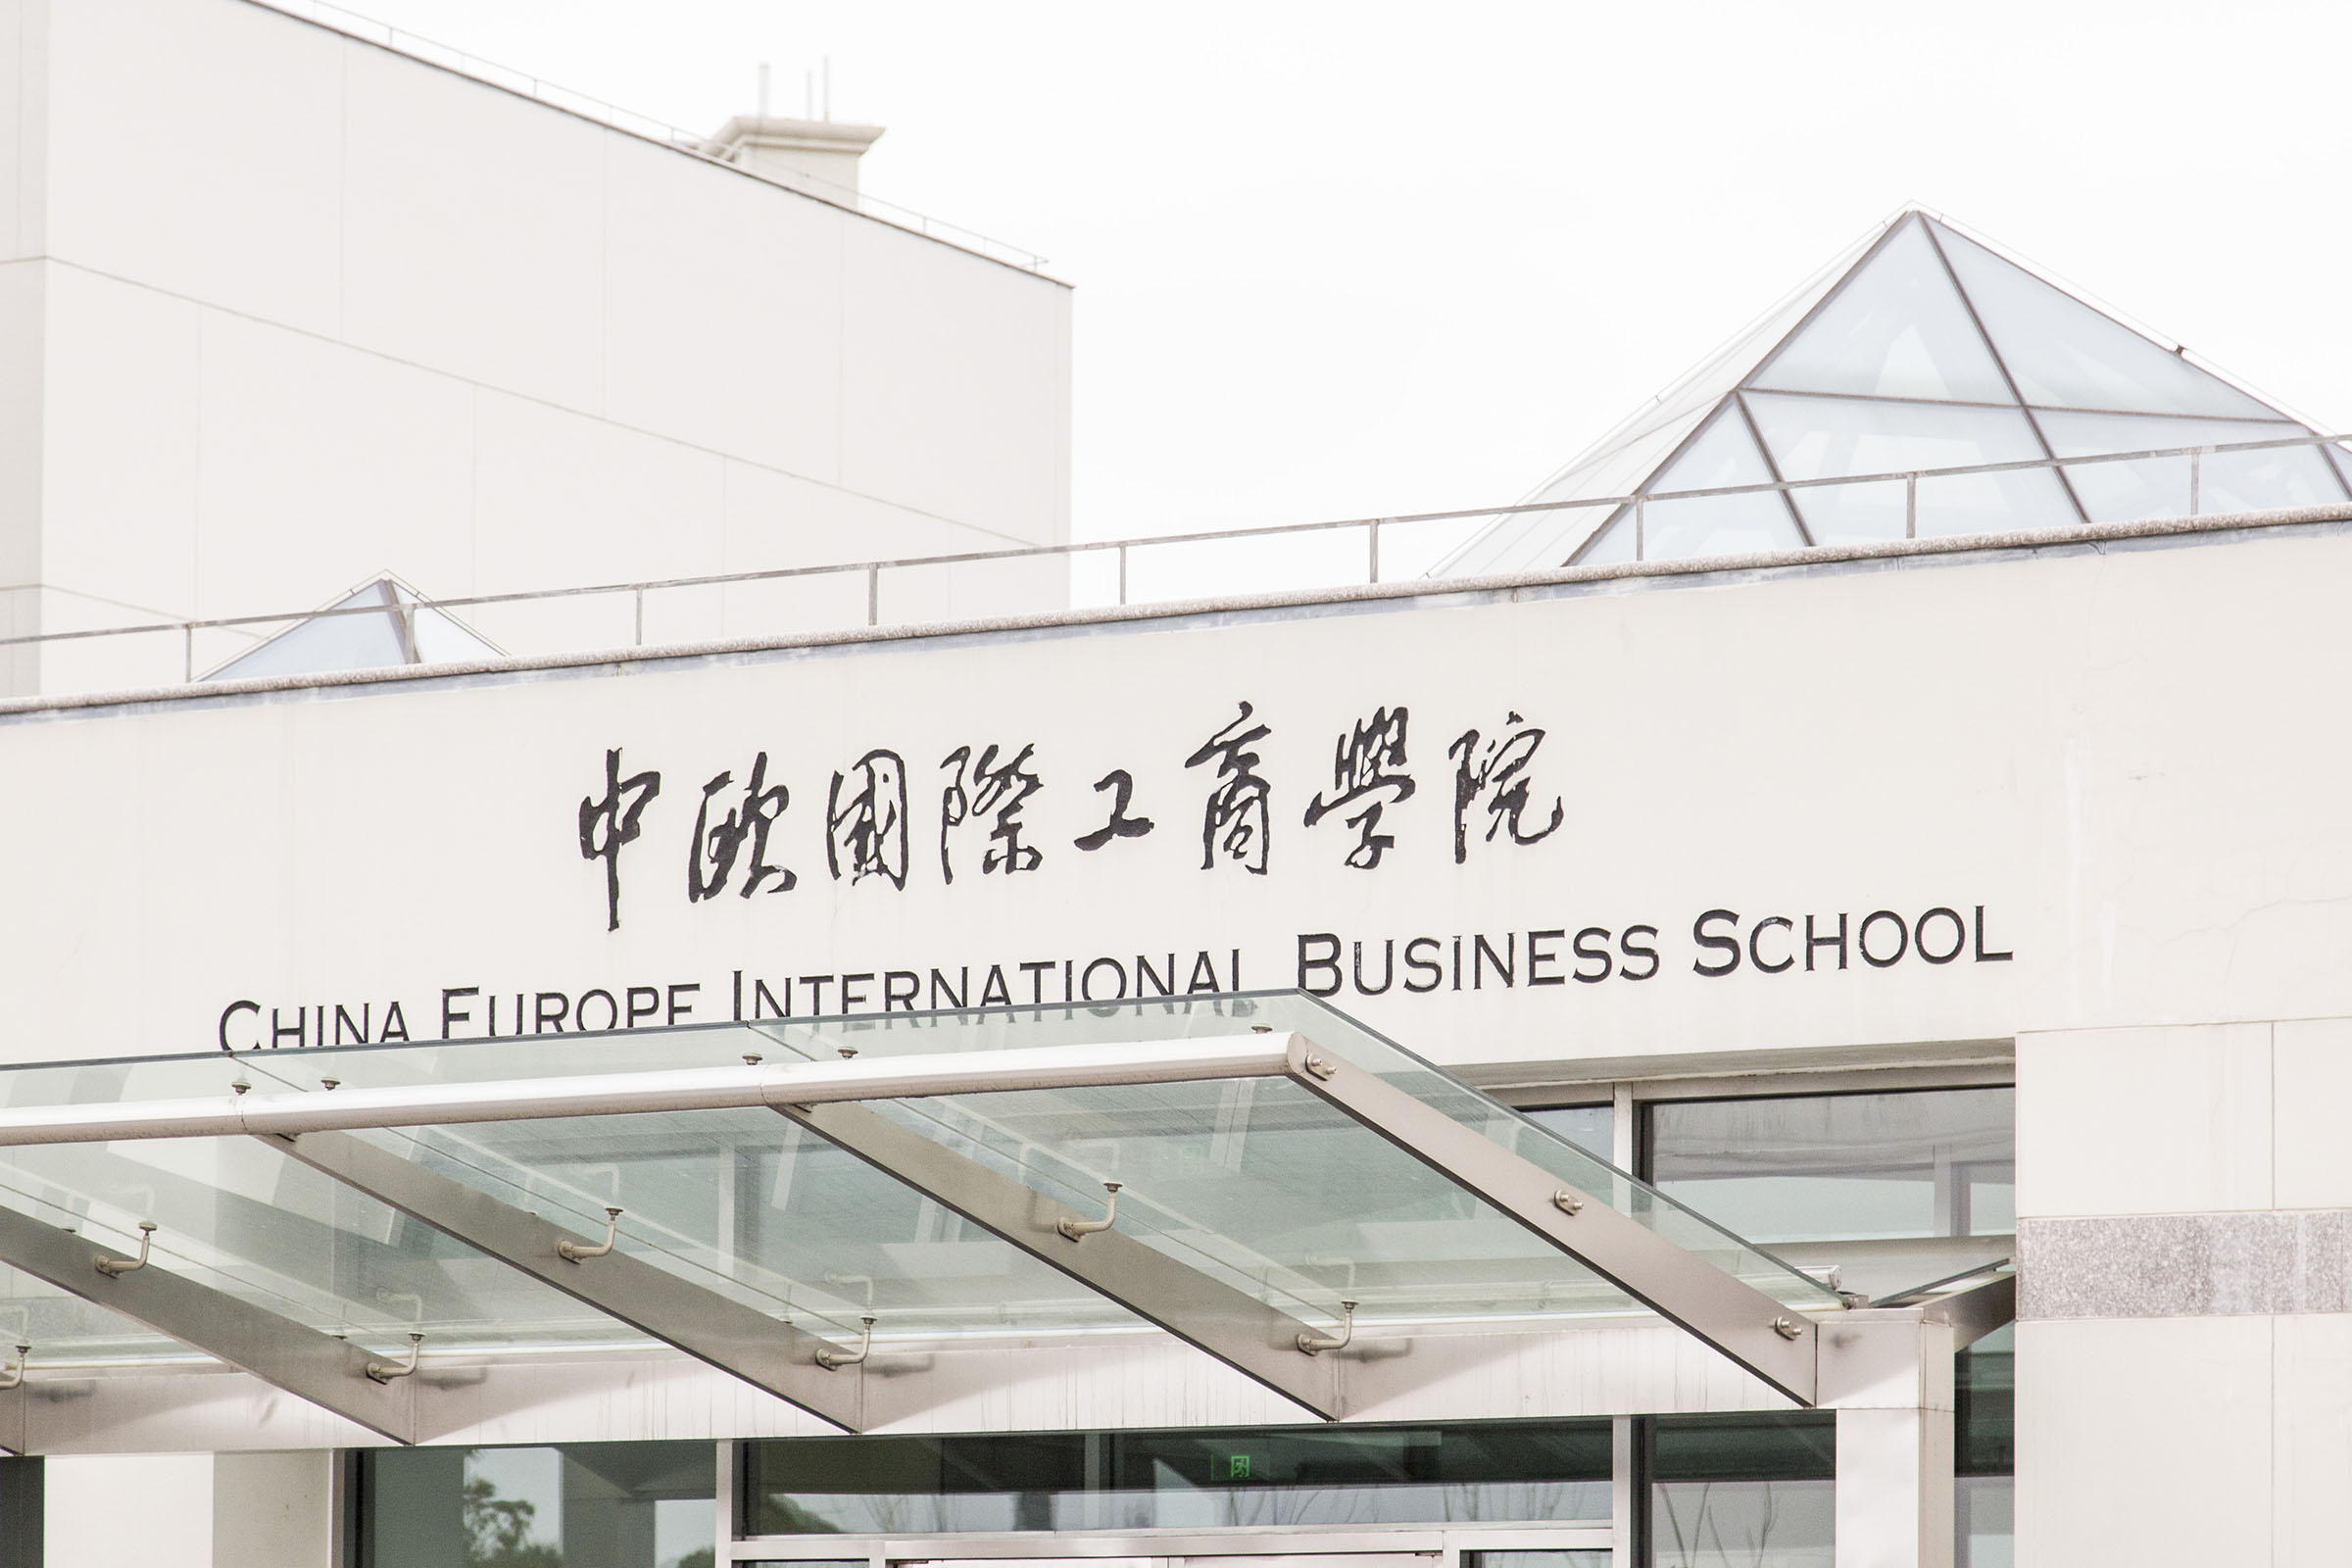 中欧国际工商学院由中国政府和欧洲联盟于1994年共同创立,是中国唯一